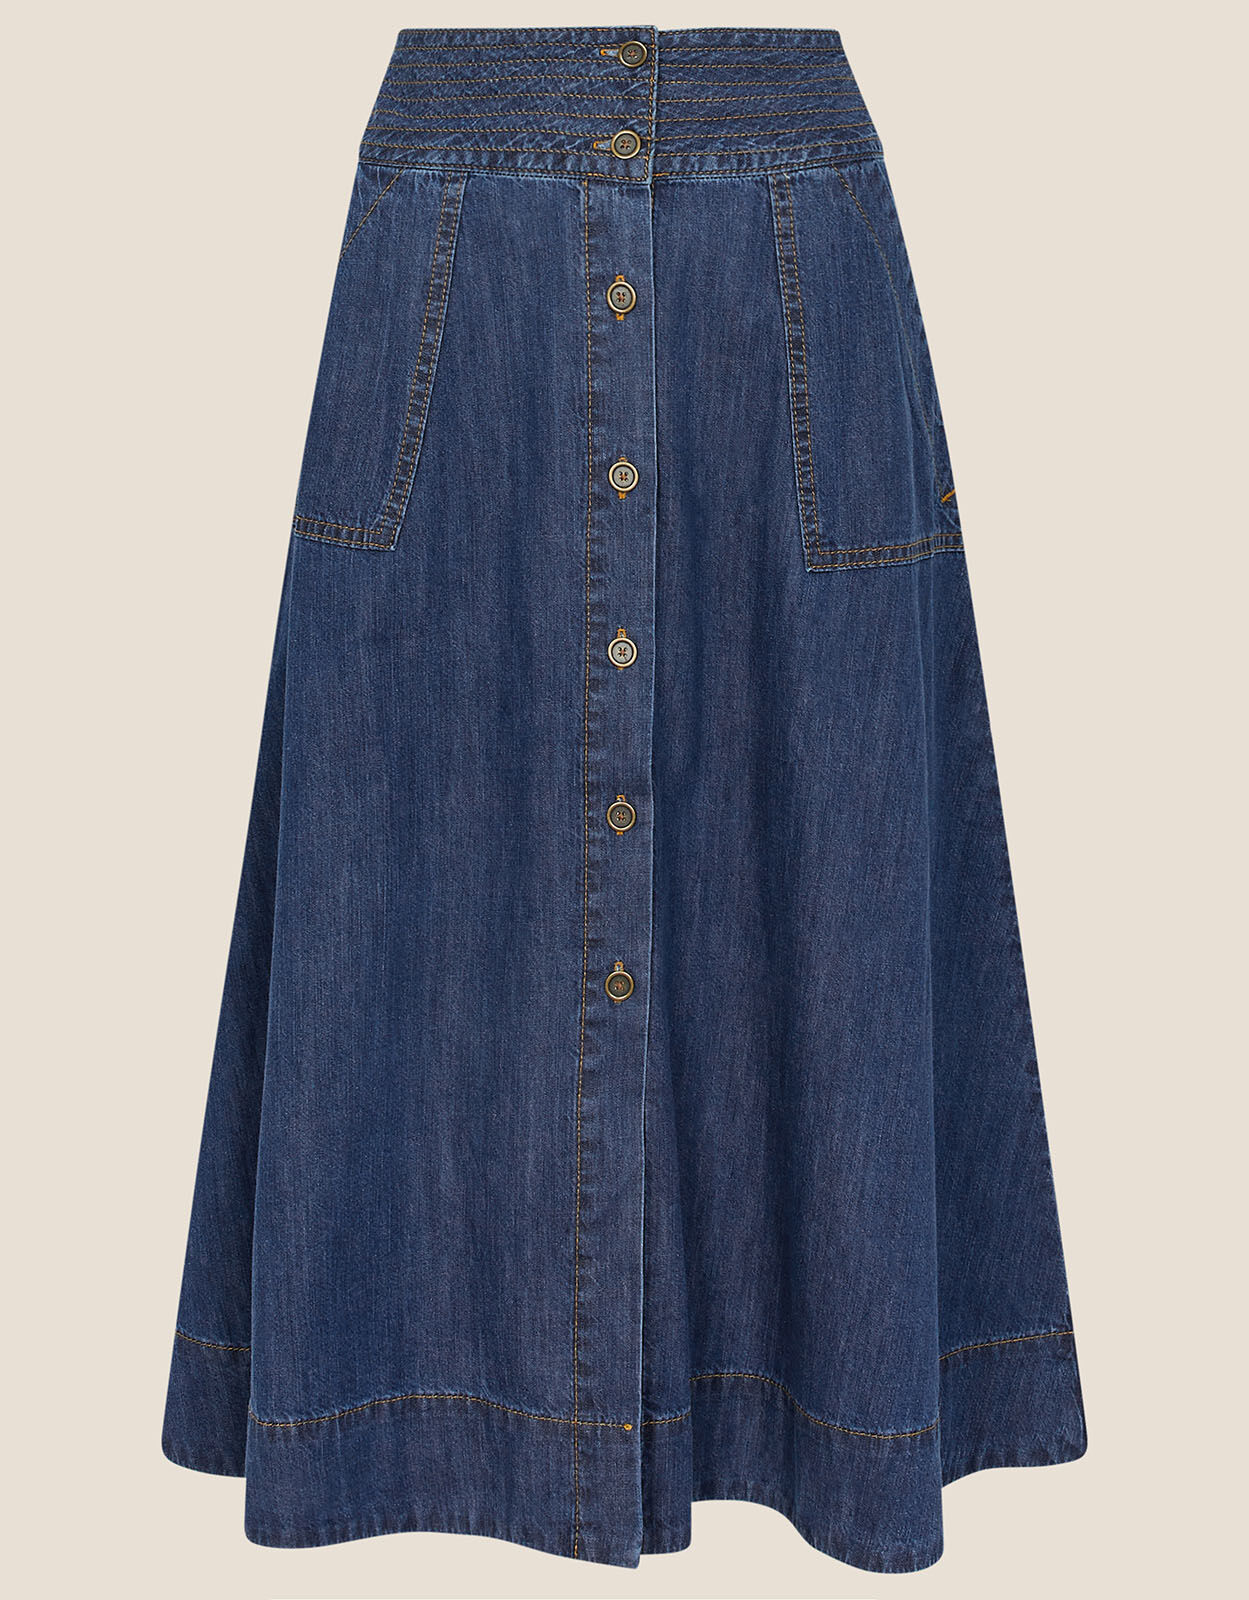 Everdene Midi Skirt - Mid Vintage | Boden UK